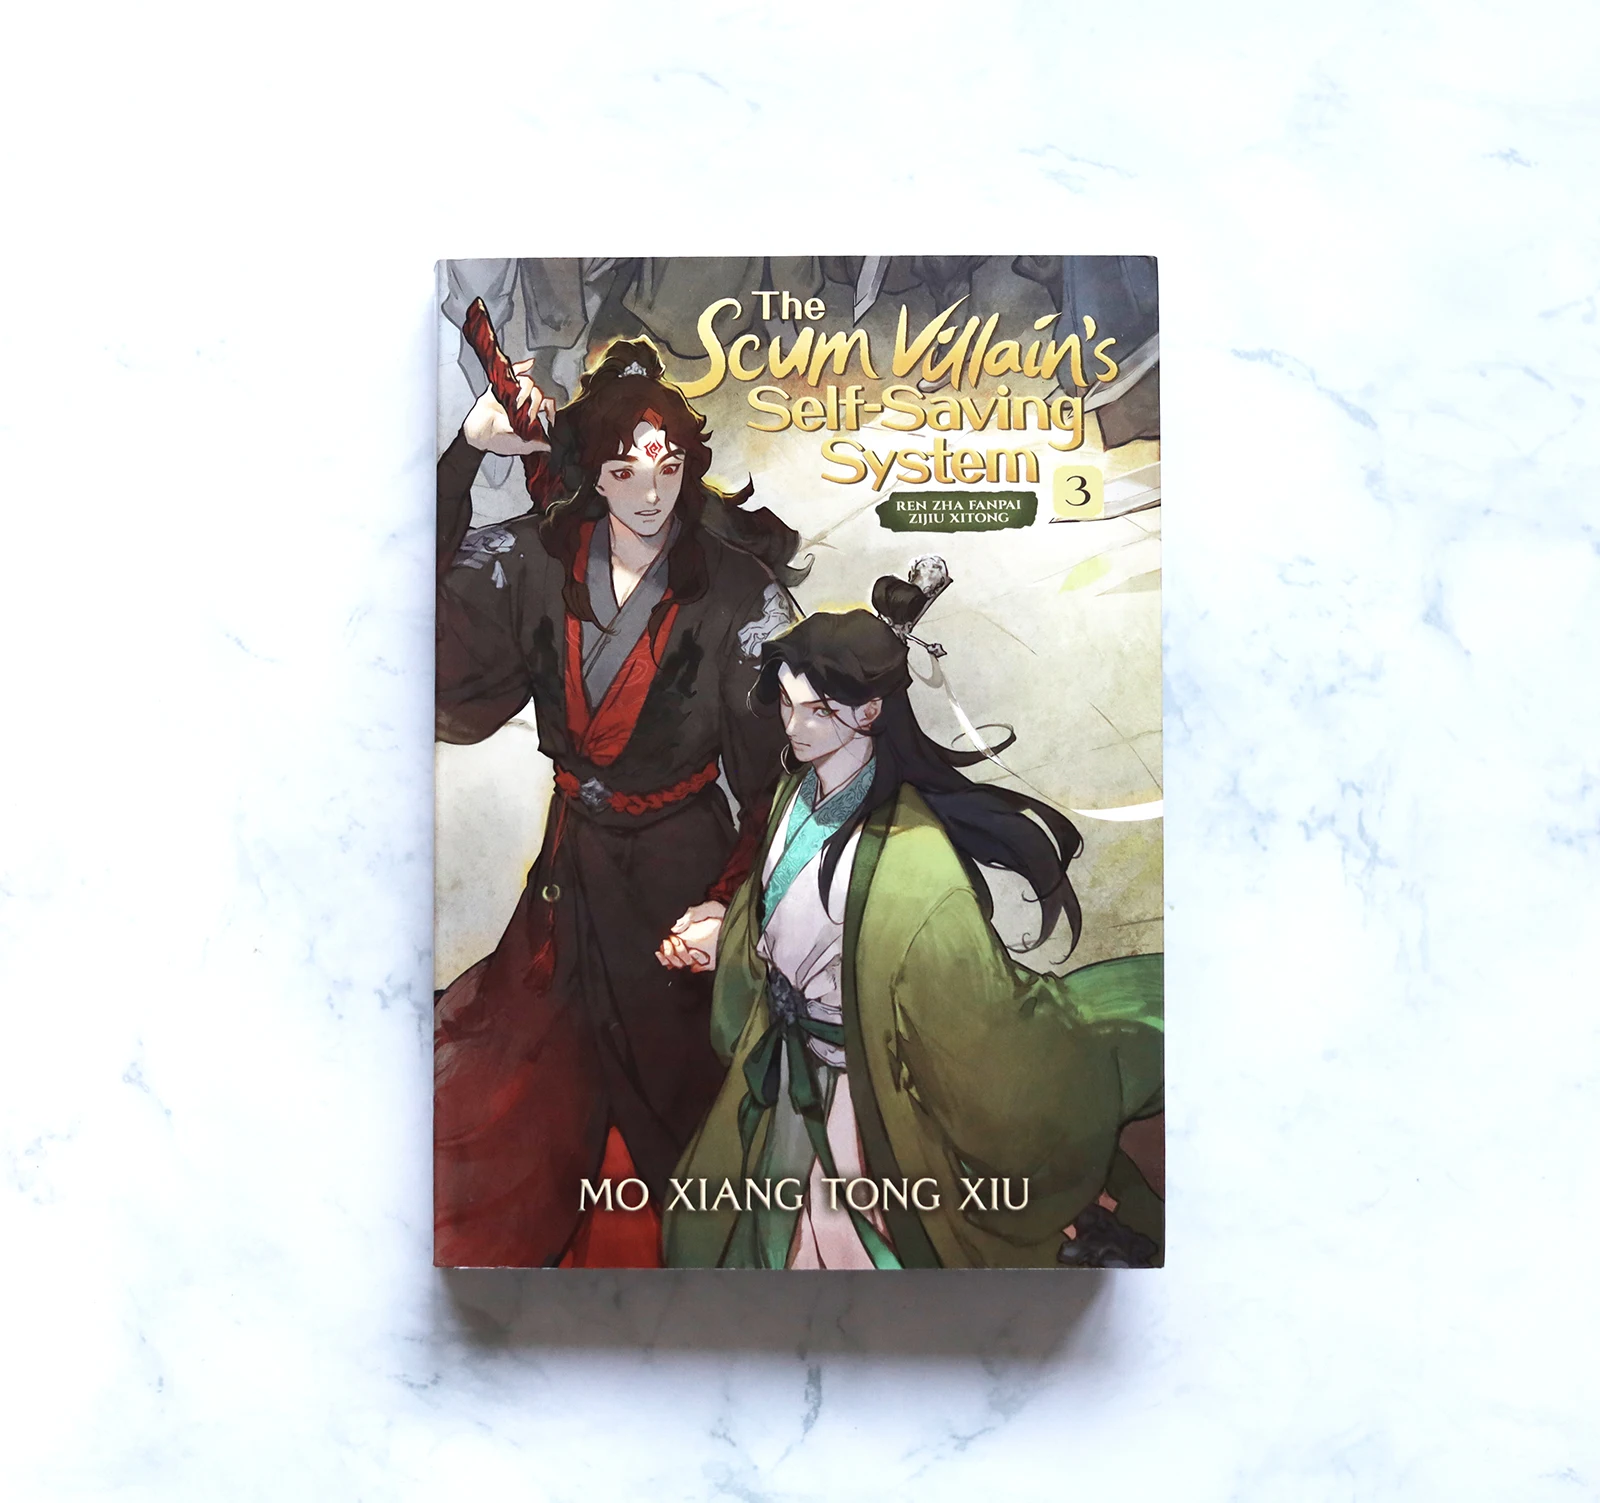 The Original English Books Scum Villain's Self-Saving System: Ren Zha Fanpai Zijiu Xitong (Novel) Vol.3 Novels By MXTX Book